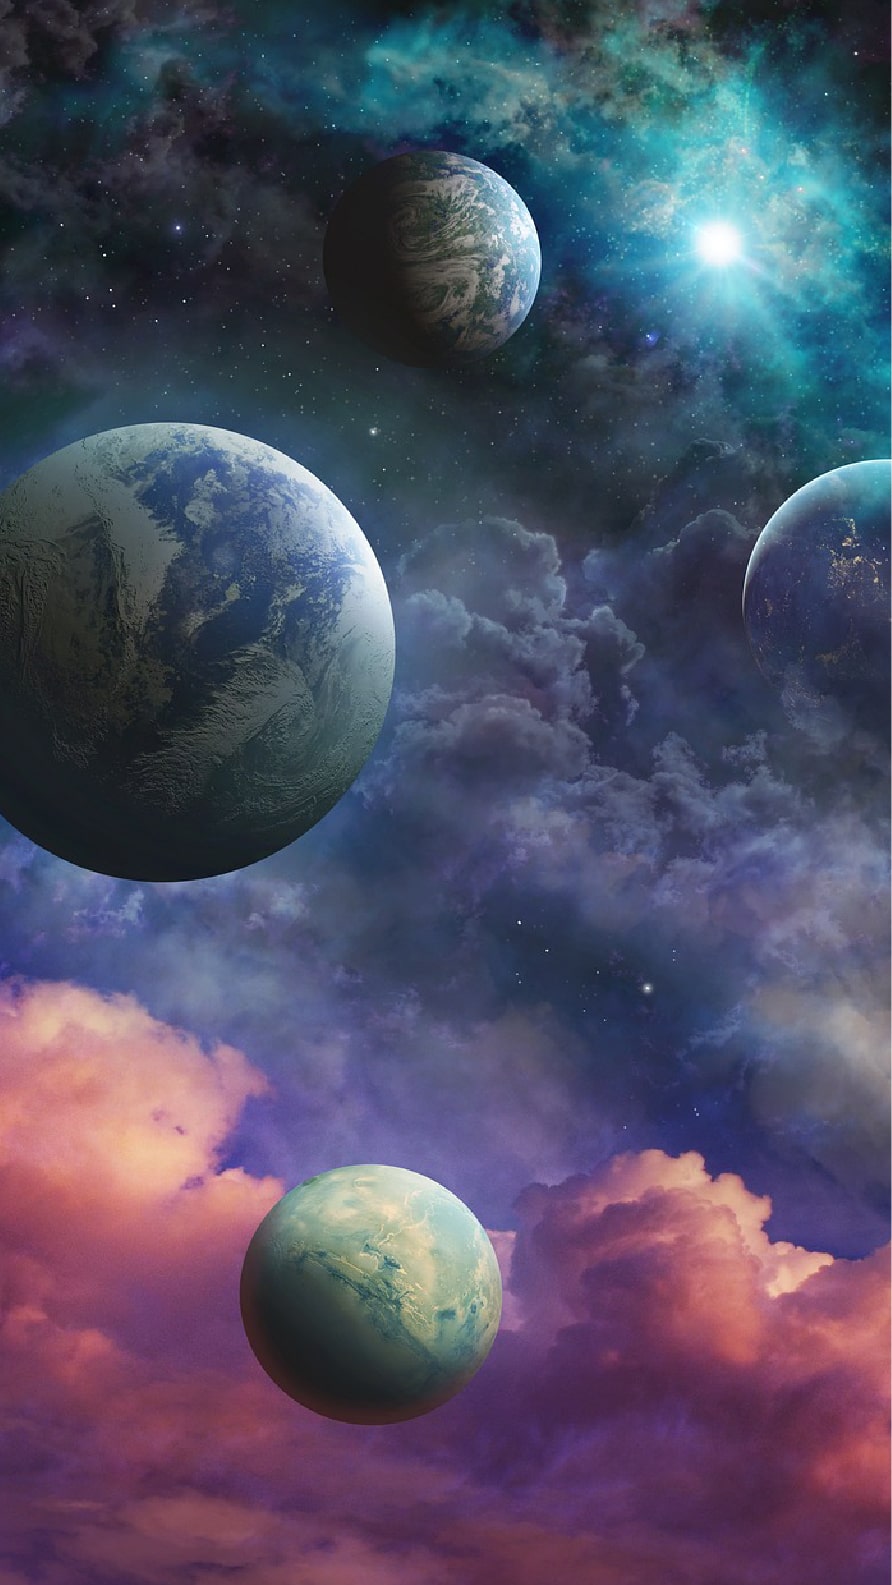 Papel de parede e Wallpaper de planetas para iPhone